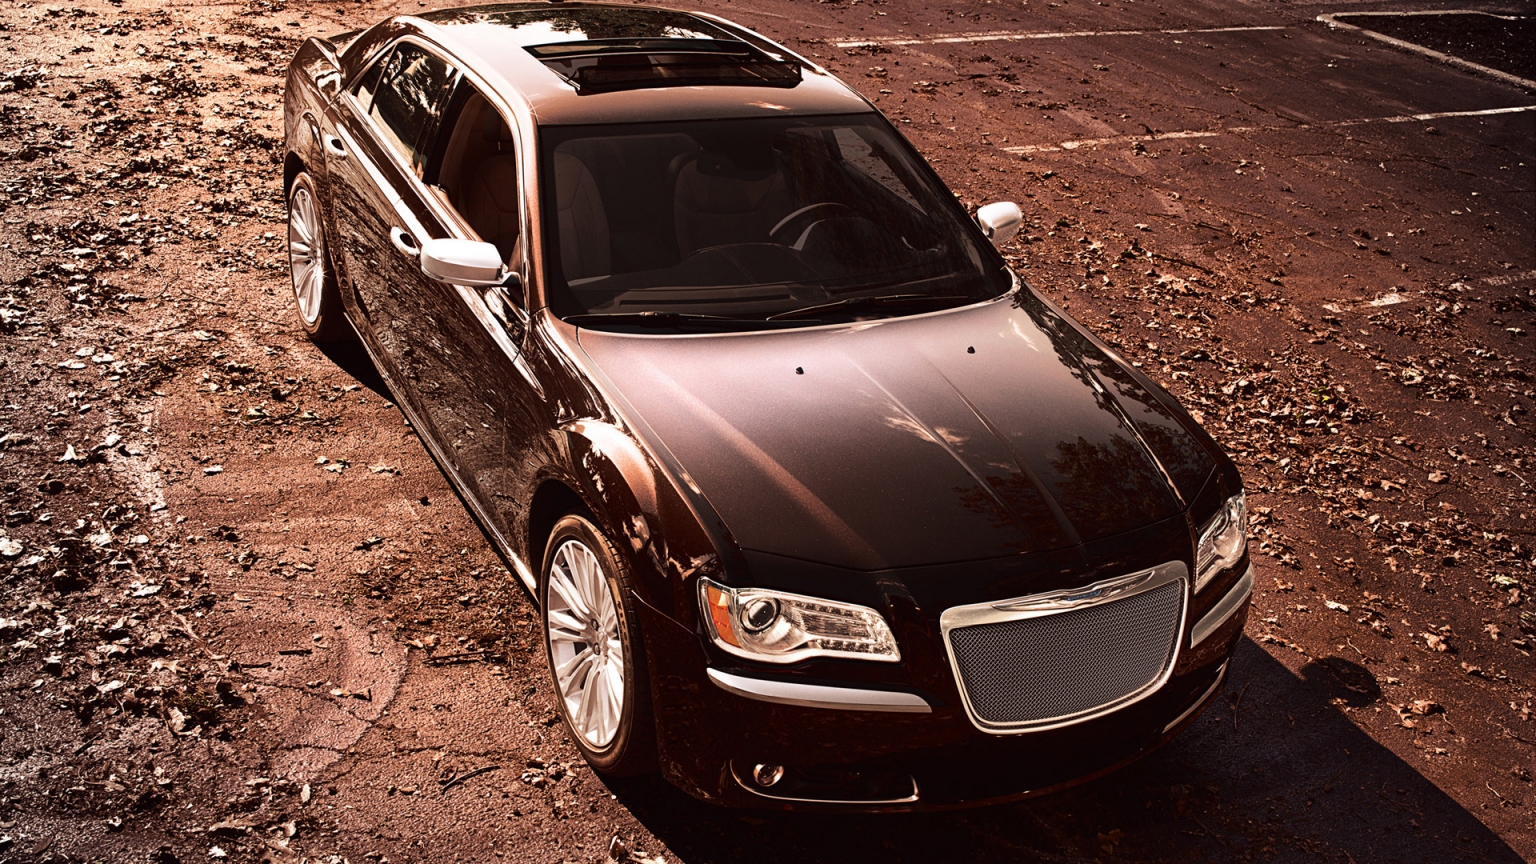 2012 Chrysler 300 Luxury Series for 1536 x 864 HDTV resolution